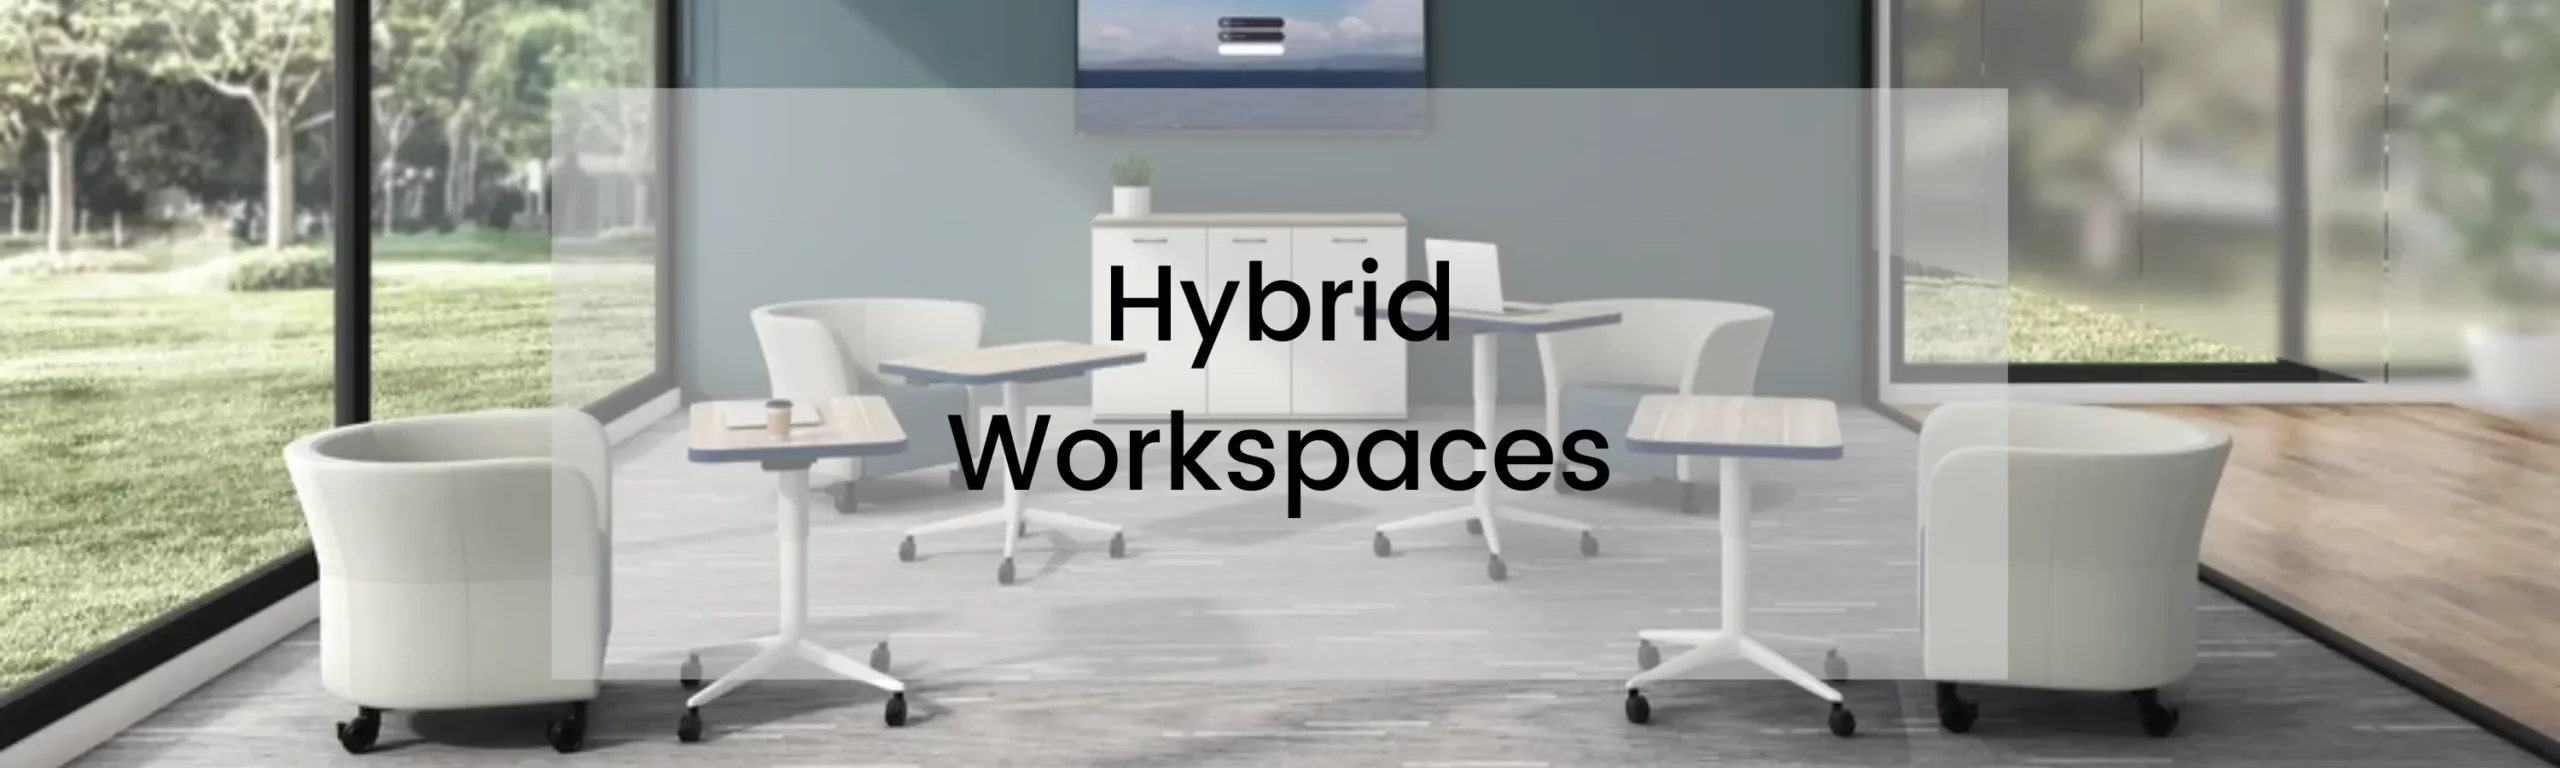 Hybrid Workspaces Banner